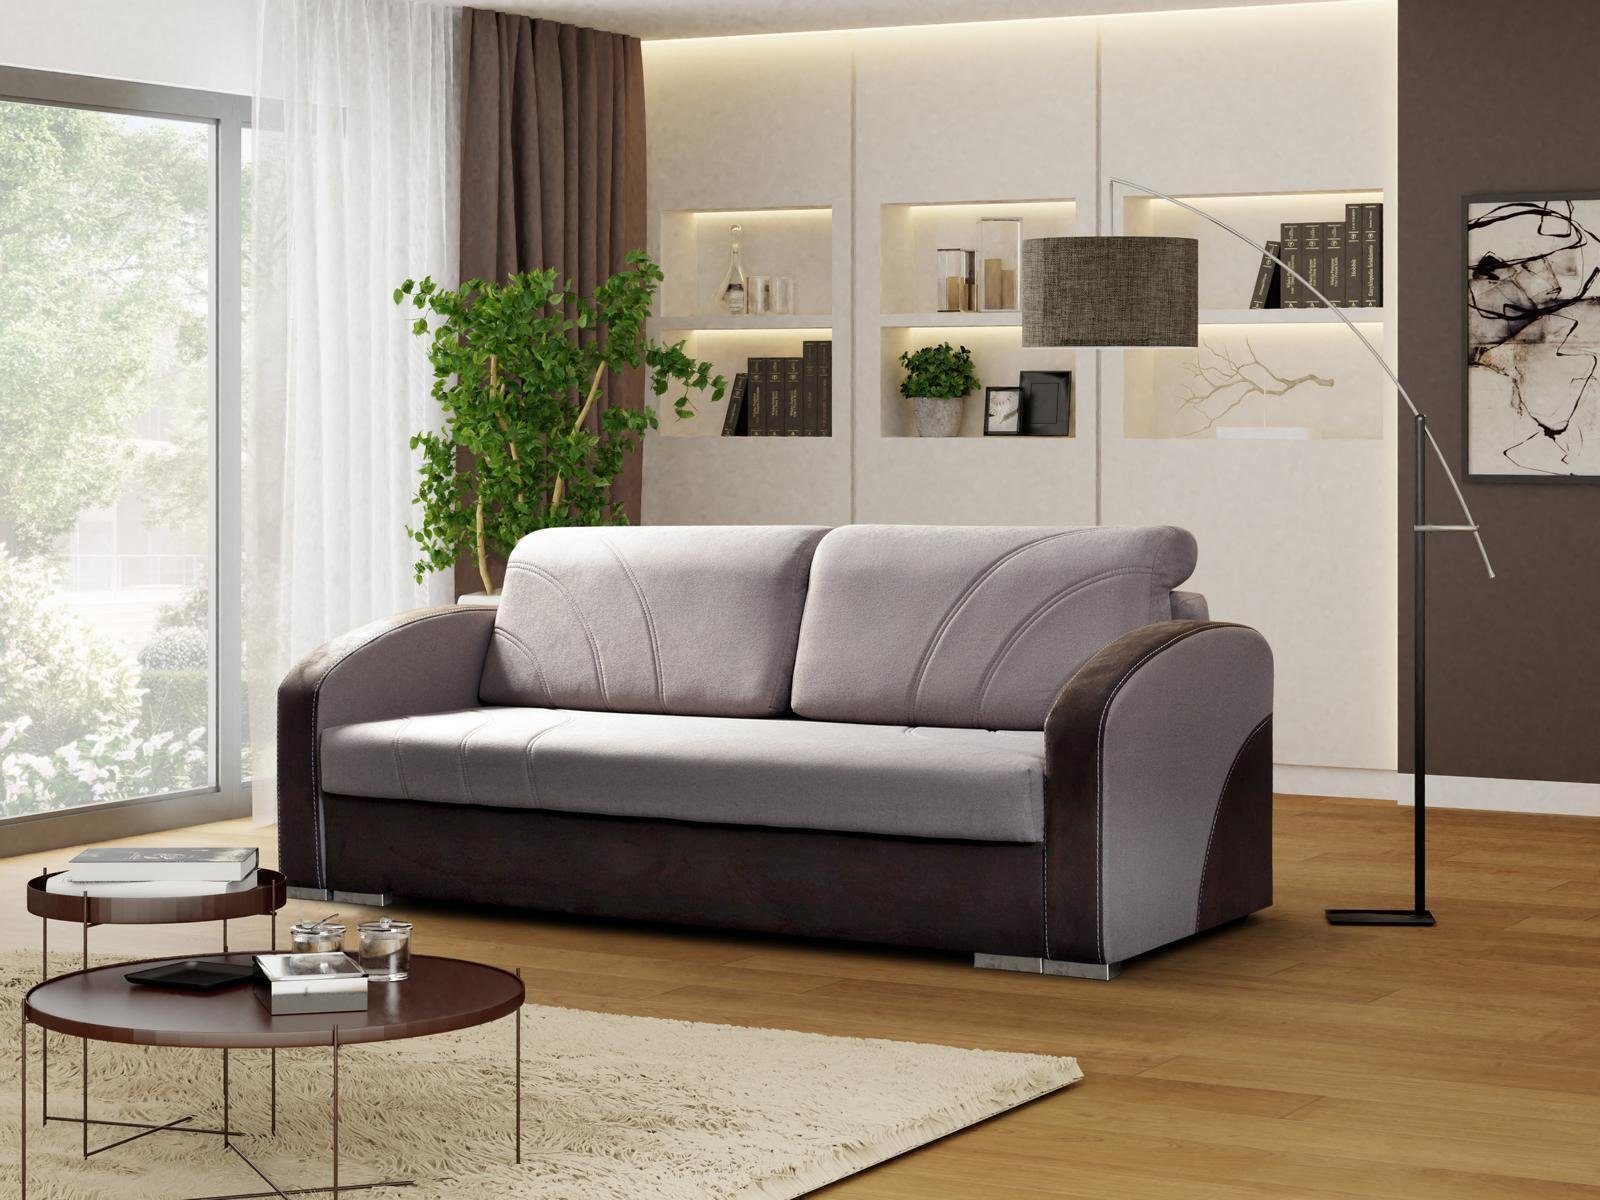 JVmoebel Sofa Moderner Grauer Dreisitzer mit Bettfunktion luxus Neu, Made in Europe